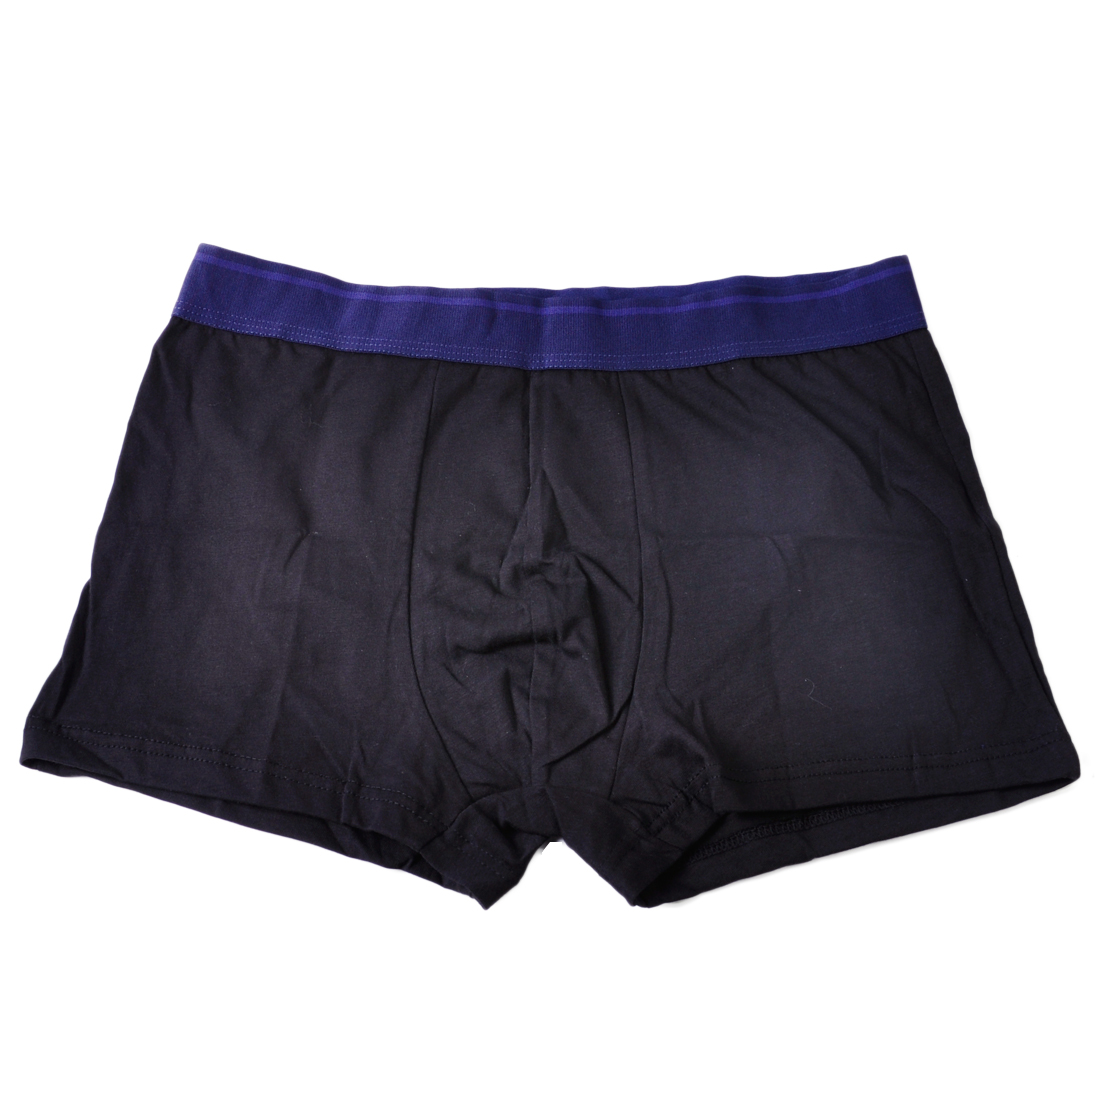 Men Soft Underwear Boxer Briefs Shorts Bulge Pouch Trunks Underpants ...